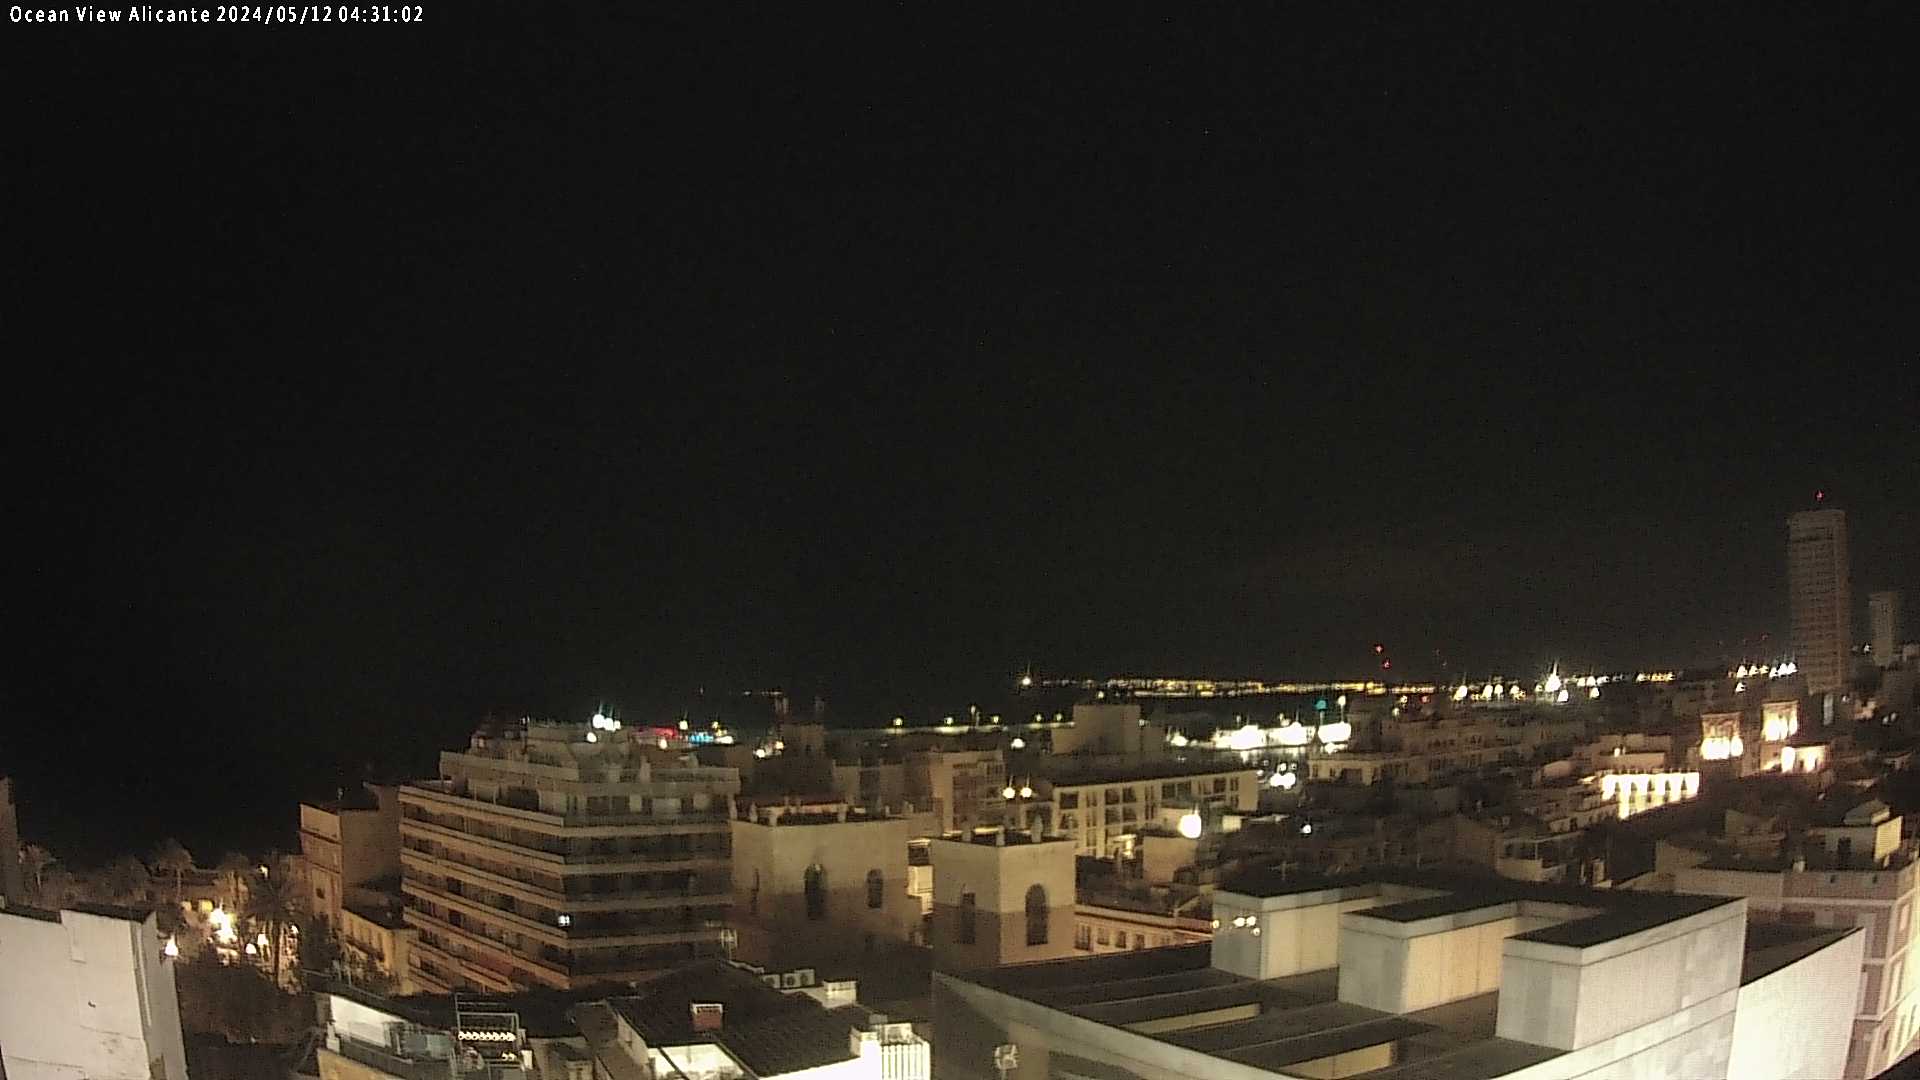 Alicante Fri. 04:31